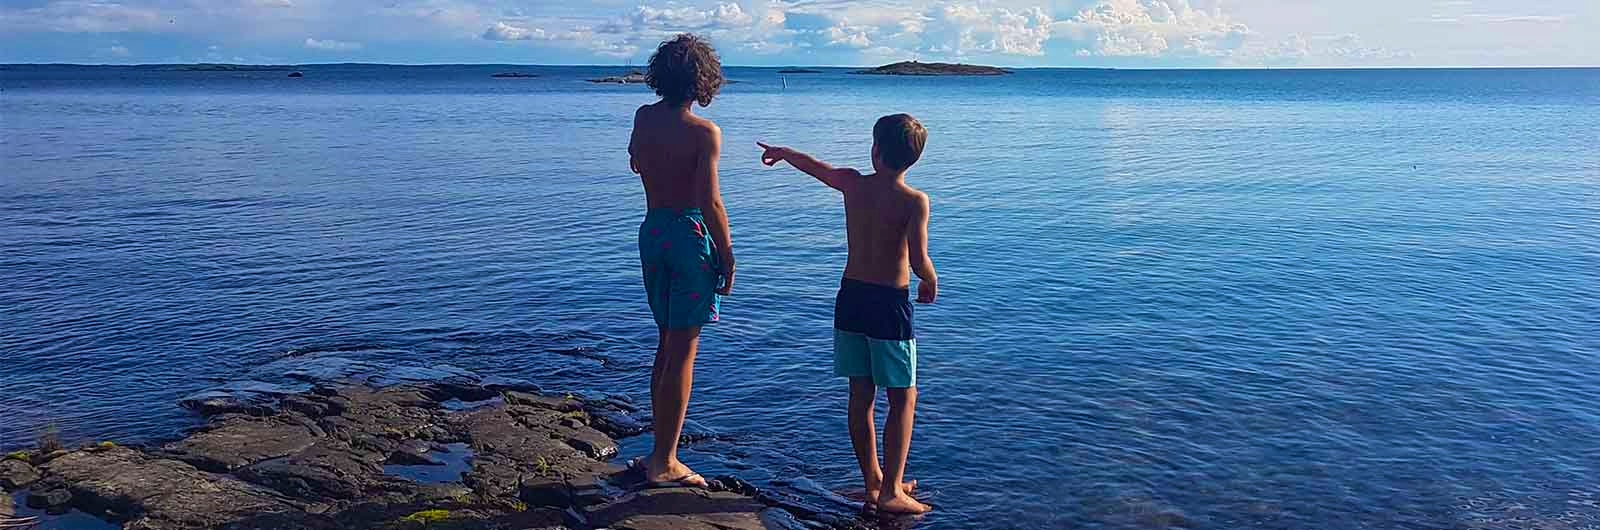 Två pojkar badar i havet